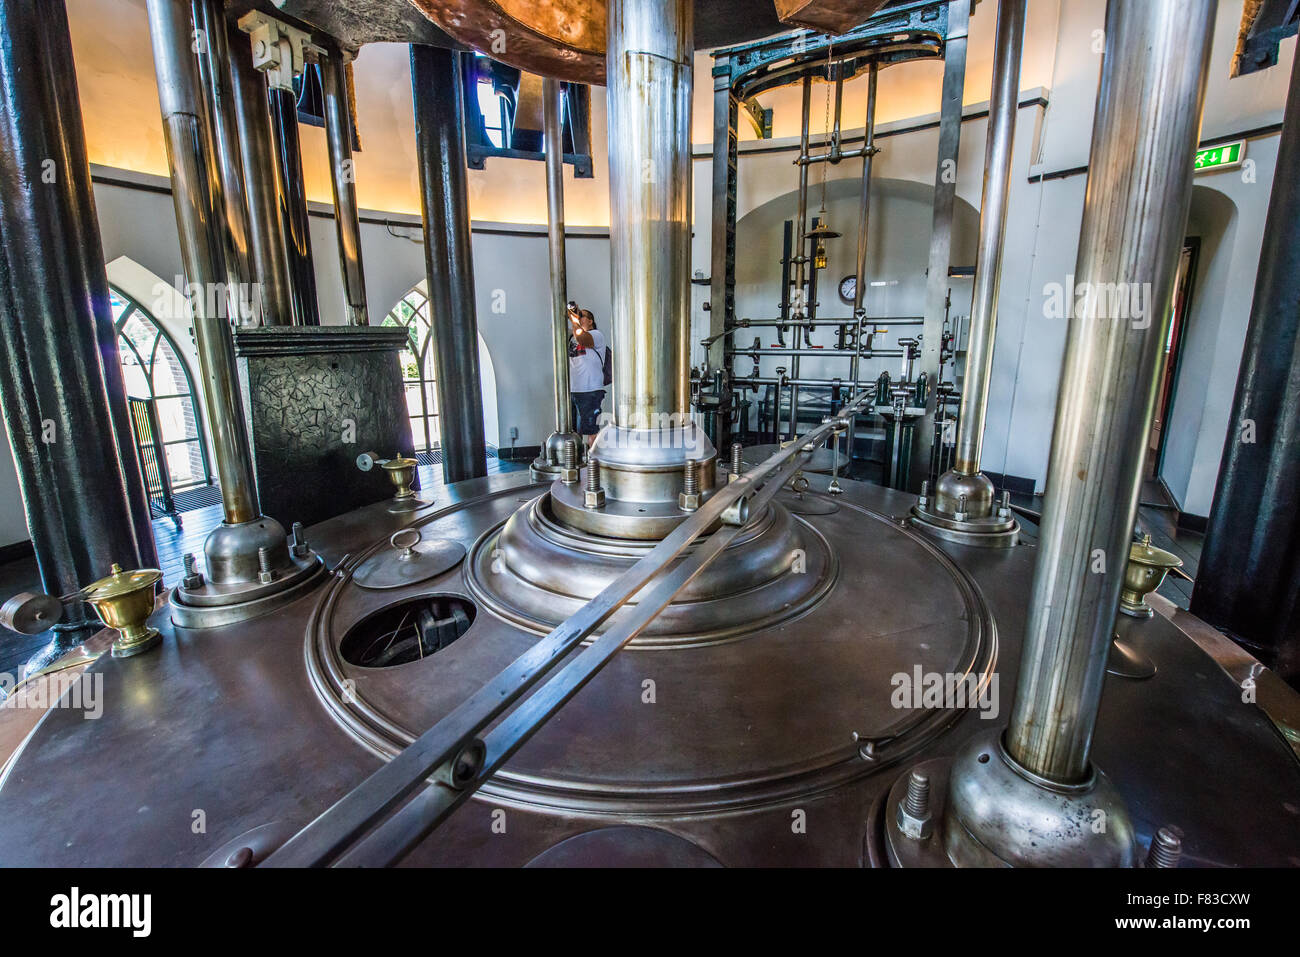 La station de pompage de Cruquius avec son énorme pompe à vapeur un bel exemple de génie mécanique au 19e siècle Banque D'Images